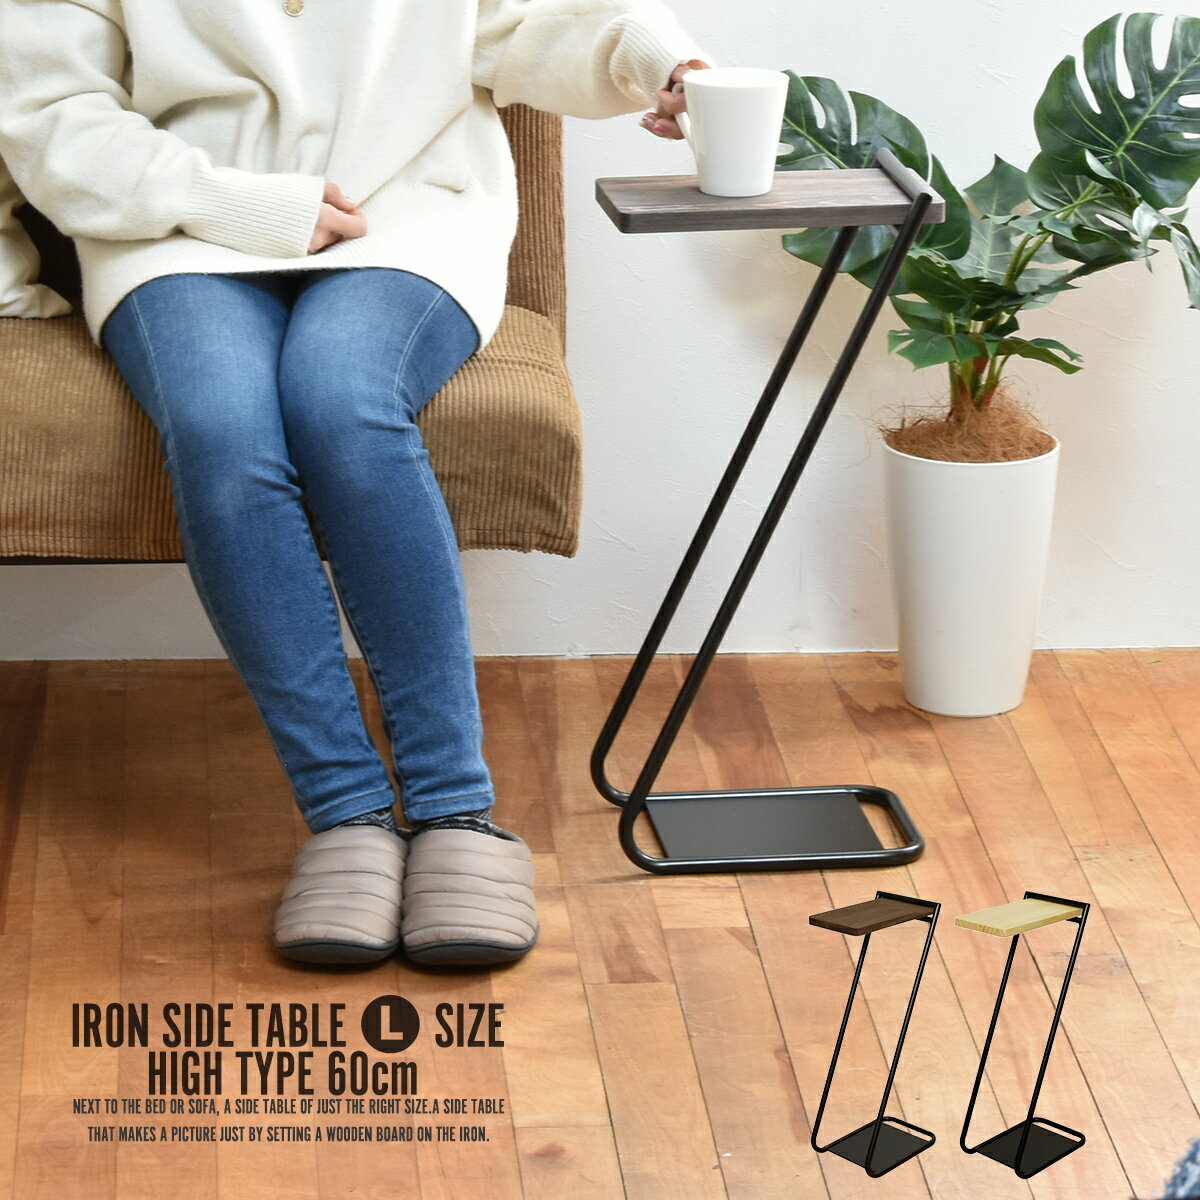 サイドテーブル シンプル オシャレ Z型 Iron Leg Side Table 【High】Lサイズ High type ナイトテーブル コーヒーテーブル ベッドサイドテーブル 北欧 木製